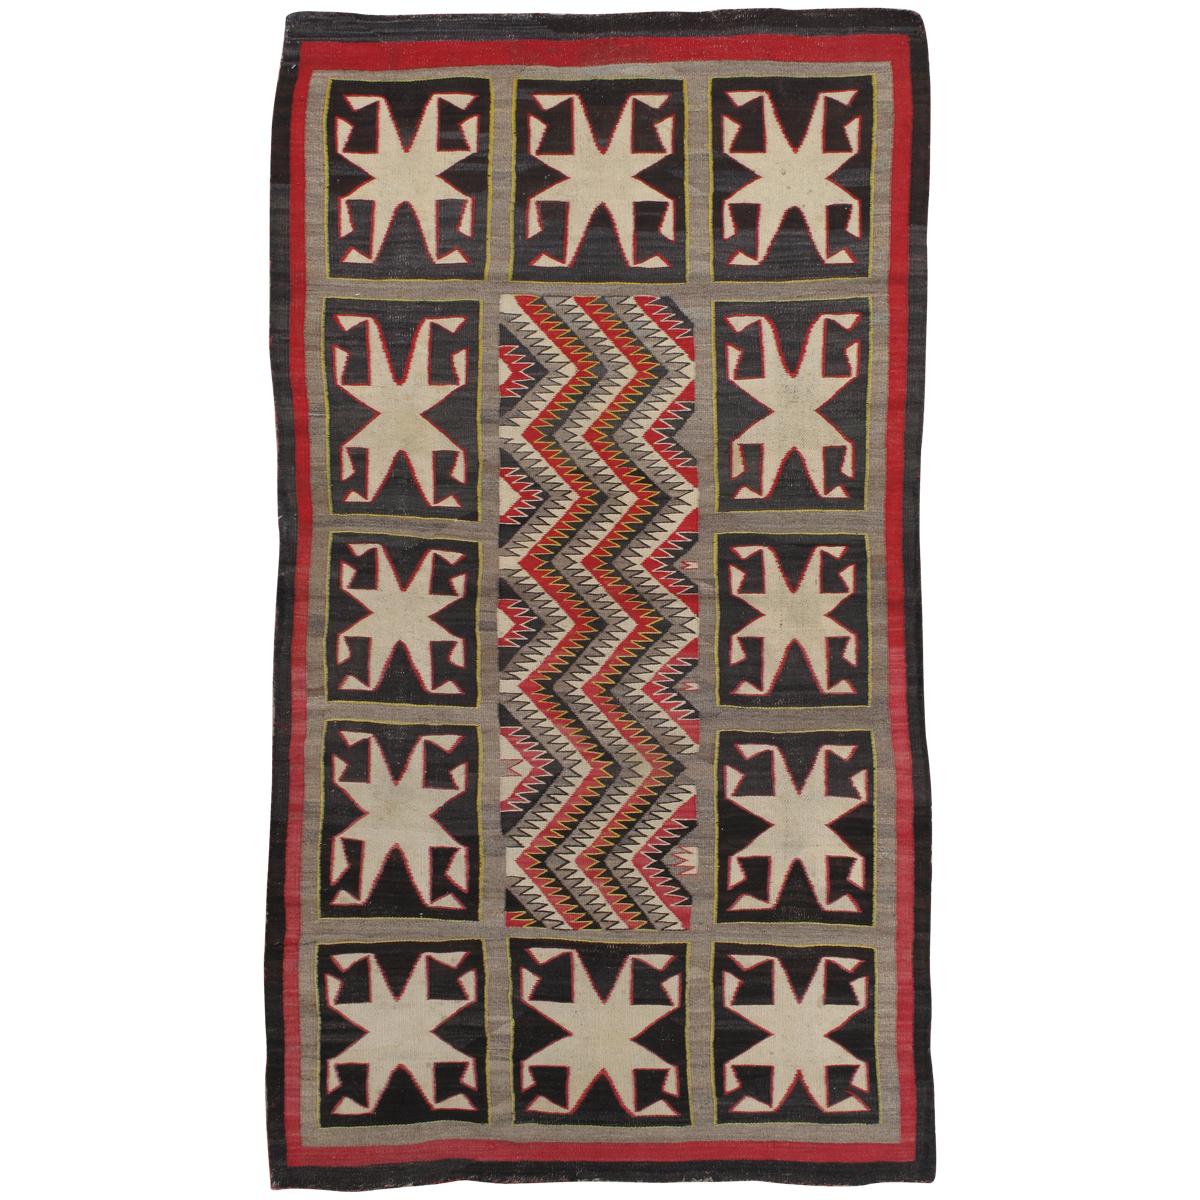 Antique Navajo Rug, Handmade Wool Oriental Rug, Red, Beige and Brown